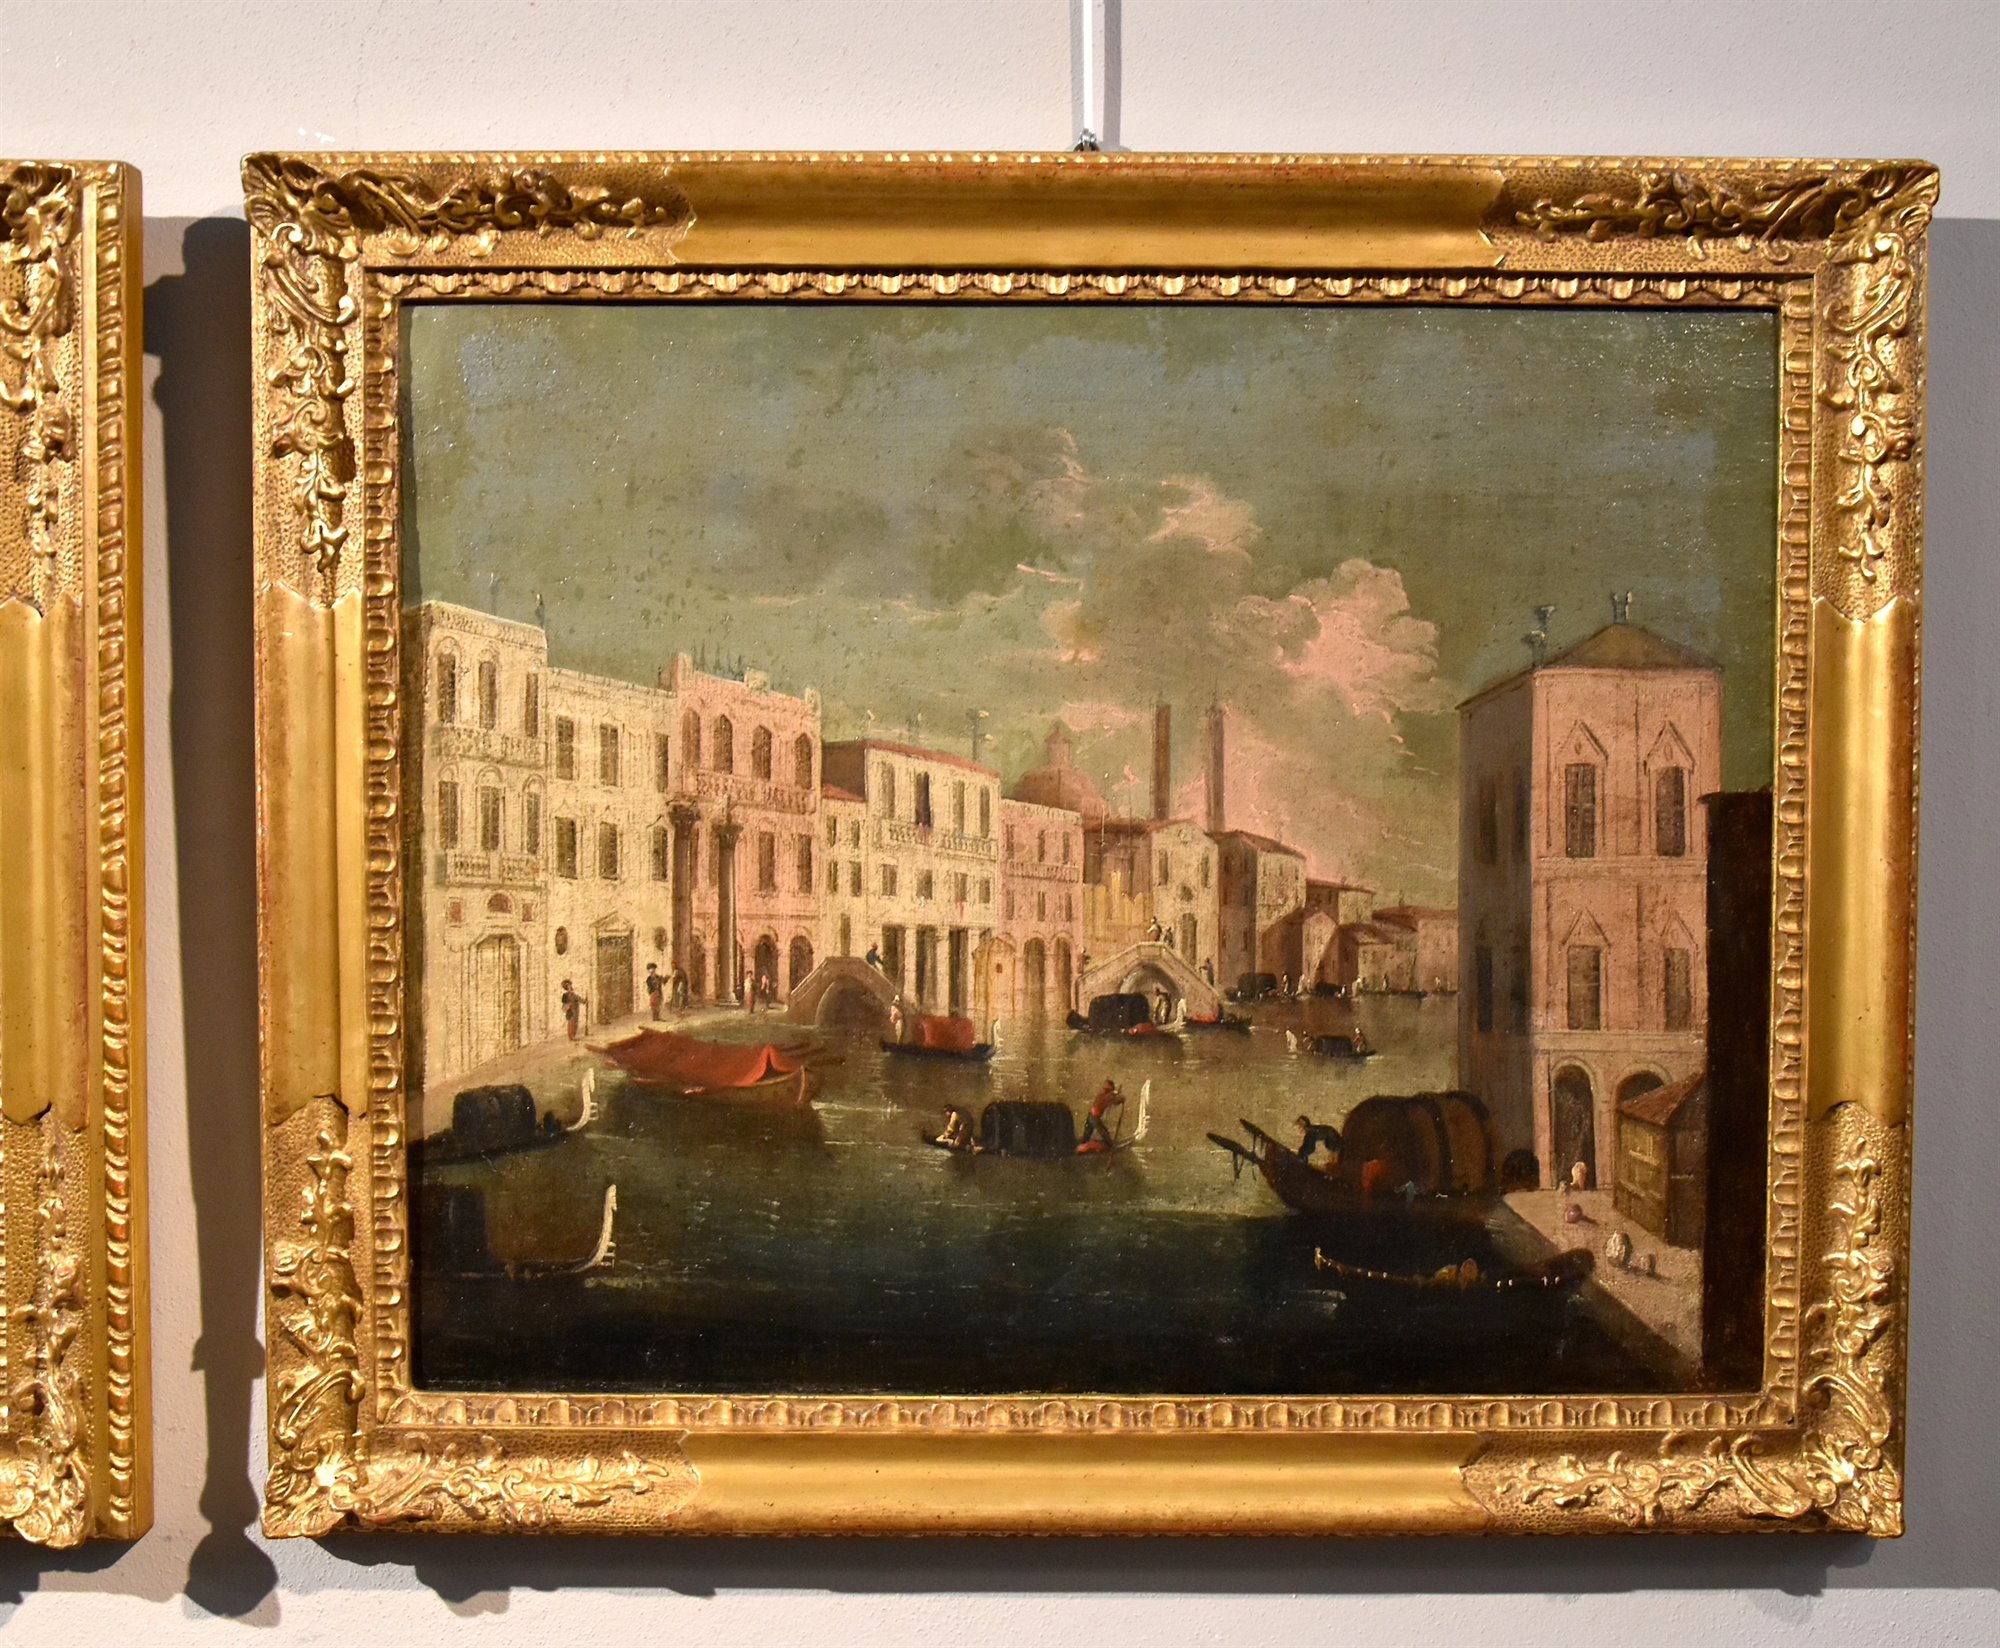 Veduta di Venezia con uno scorcio sull’inizio del Canal Grande